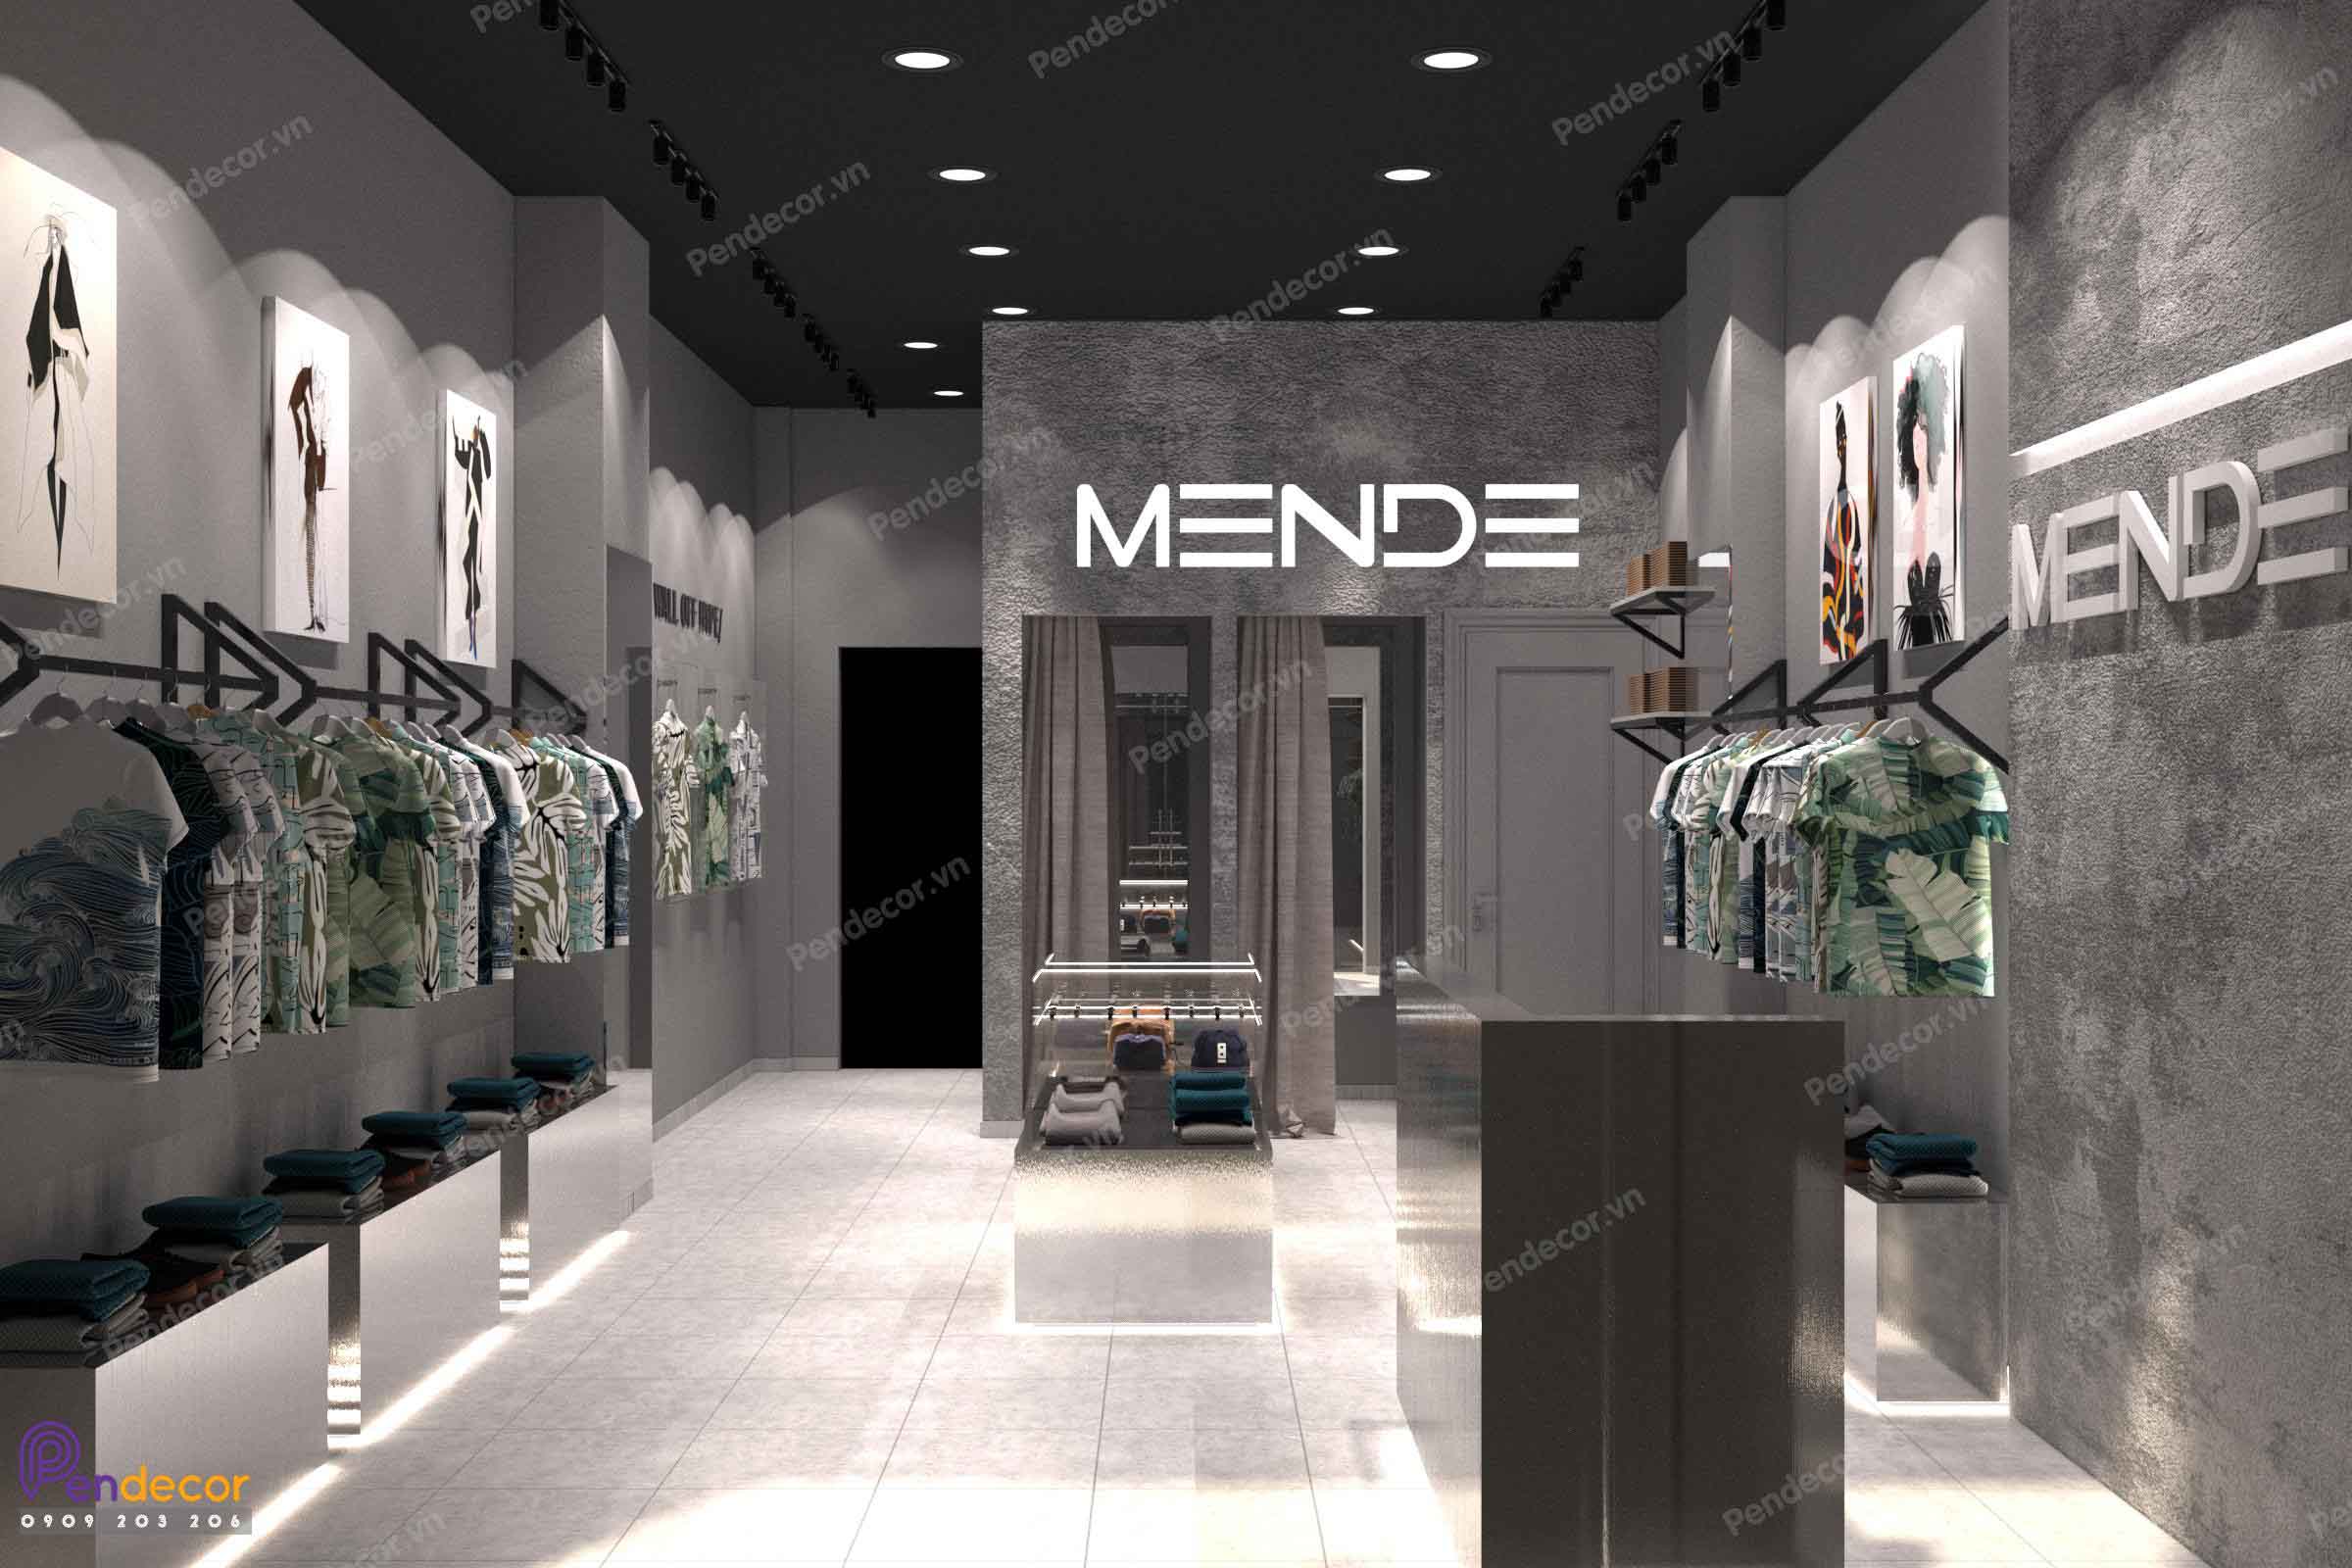 Mende 2 là một trong những thương hiệu thời trang nam được ưa chuộng nhất hiện nay. Và nếu bạn đang có kế hoạch mở một cửa hàng thời trang nam thì việc thiết kế shop thời trang nam Mende 2 chắc chắn sẽ mang đến cho bạn một không gian bán hàng tuyệt vời. Với những sản phẩm chất lượng cùng phong cách thiết kế độc đáo, khách hàng của bạn sẽ không thể bỏ qua cửa hàng này.